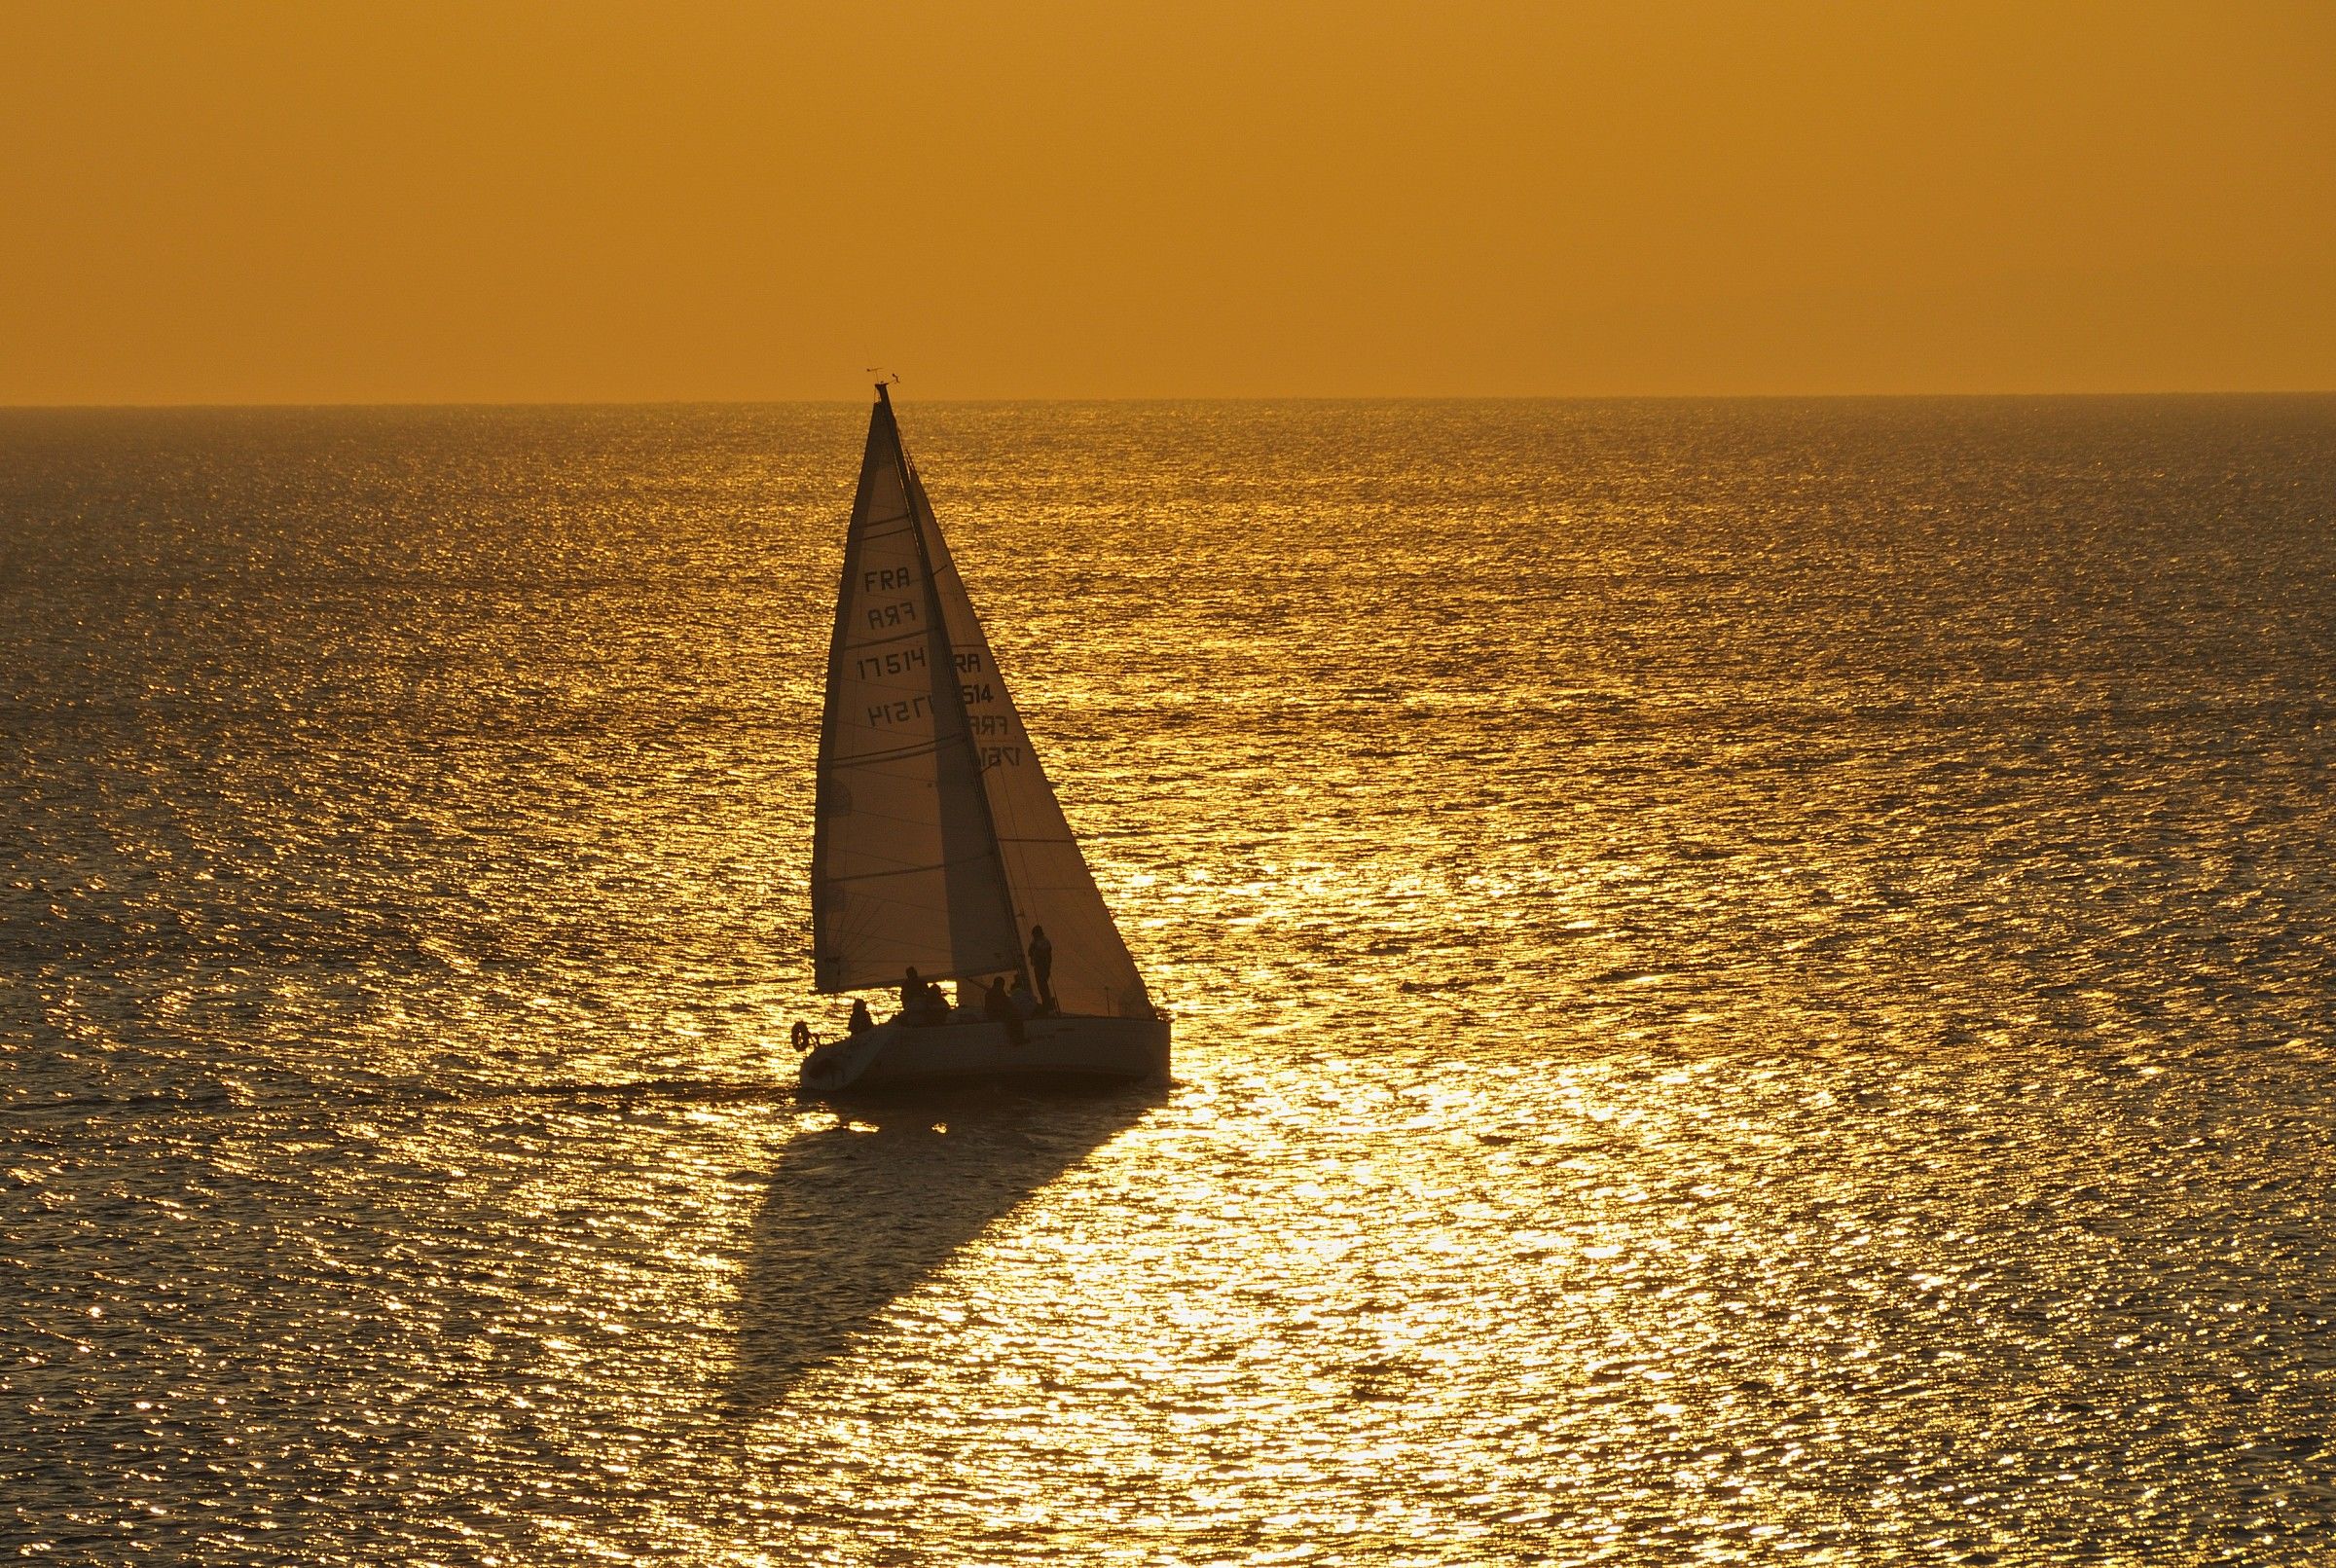 sailing...